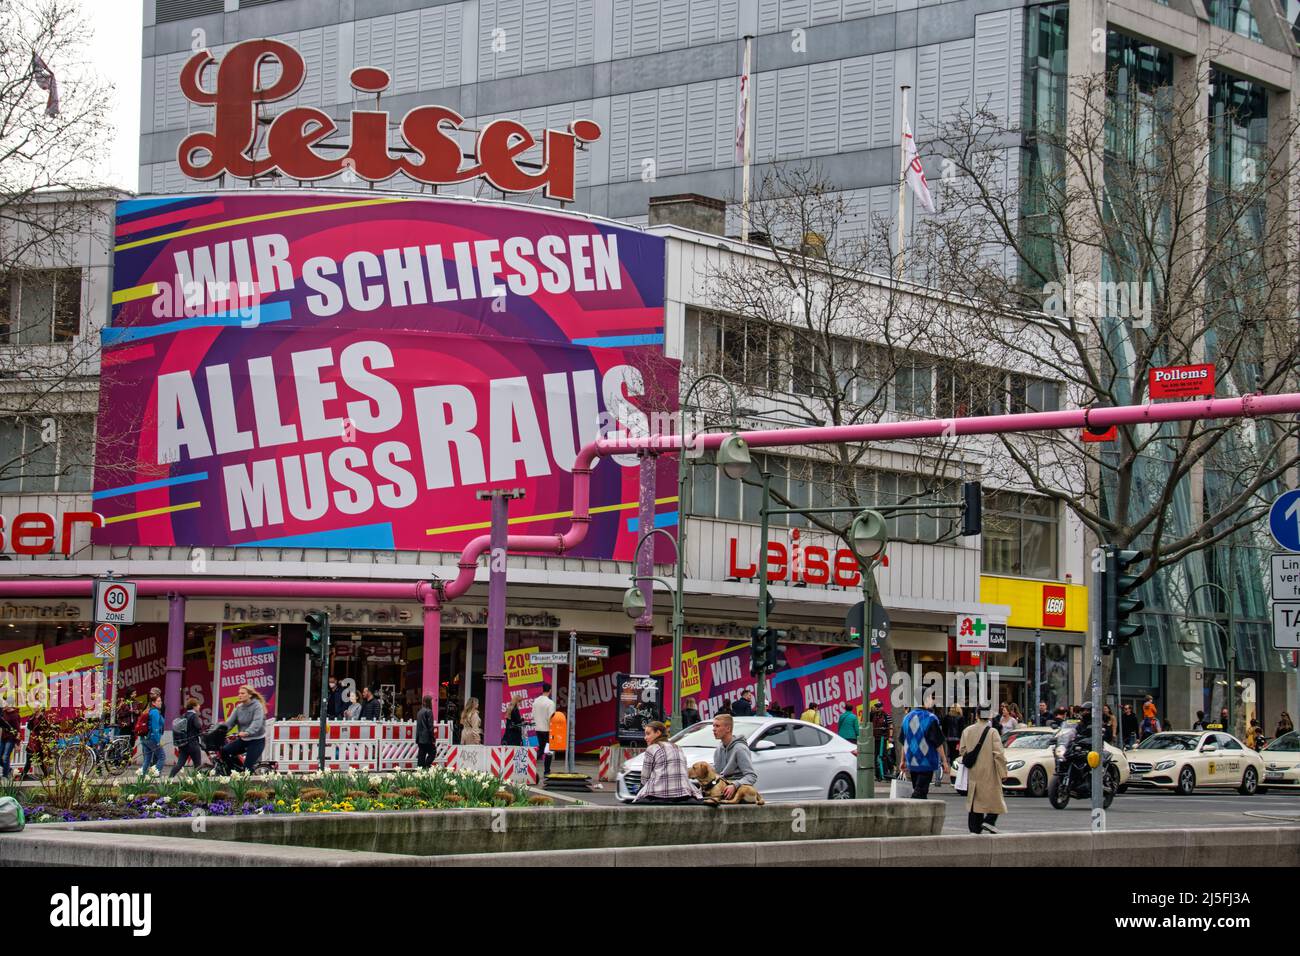 Legendäres Schuhhaus Leiser am Tauenzien a Berlino gibt Geschäft auf. Grind tiefgreifender Wandel im Einzelhandel . Foto Stock